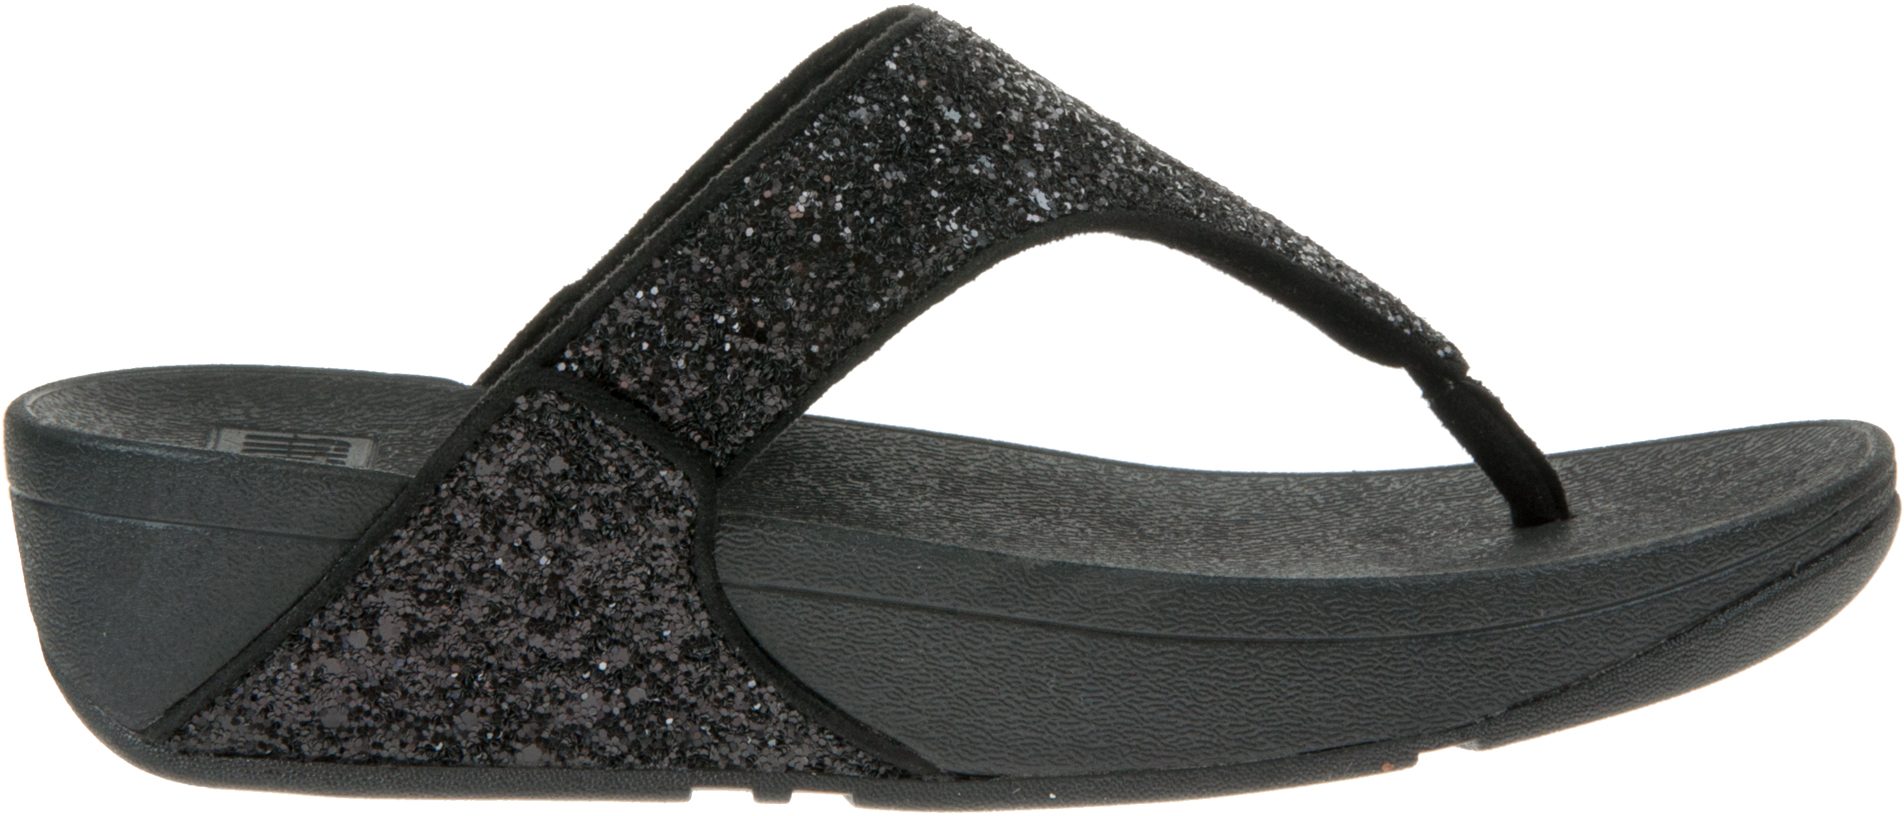 FitFlop Lulu Glitter Toe-Post Black Glitter X03-339 - Toe Post Sandals ...